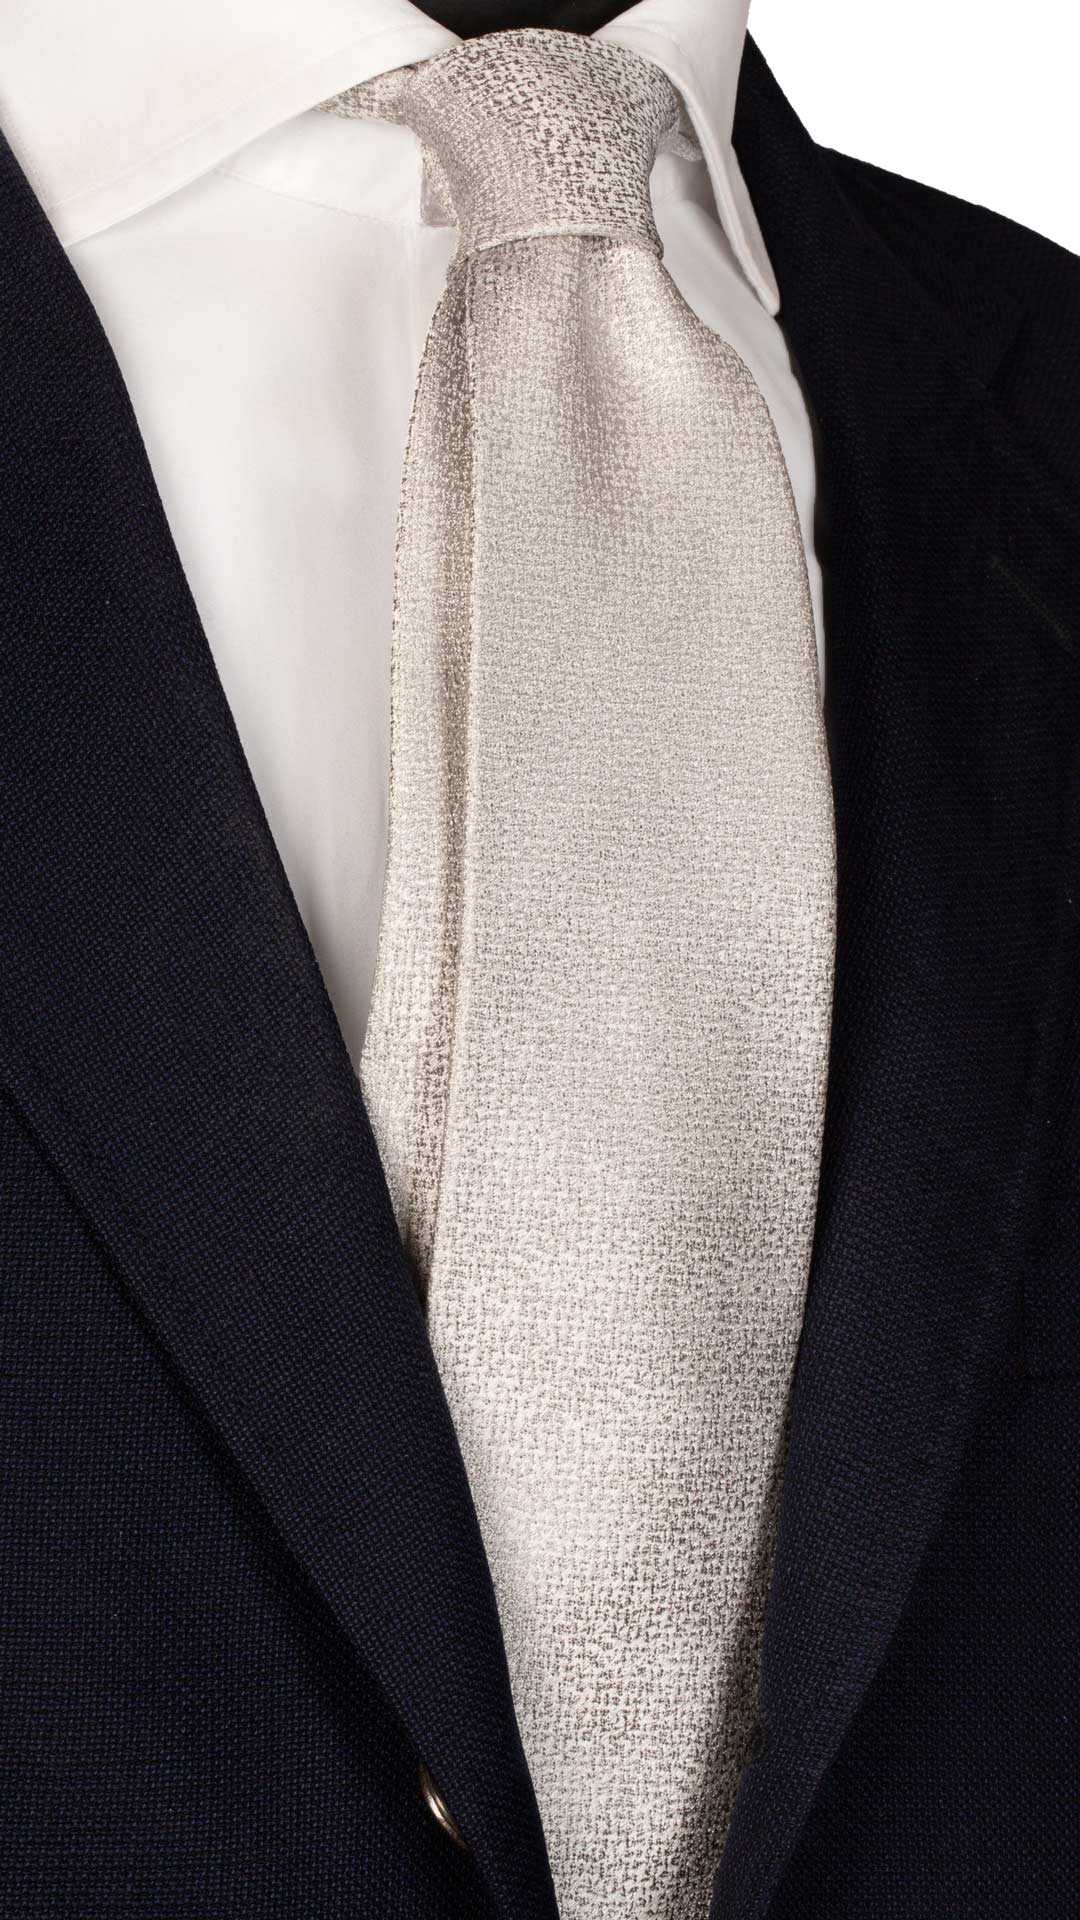 Cravatta da Cerimonia di Seta Grigio Argento Effetto Satinato Made in Italy Graffeo Cravatte